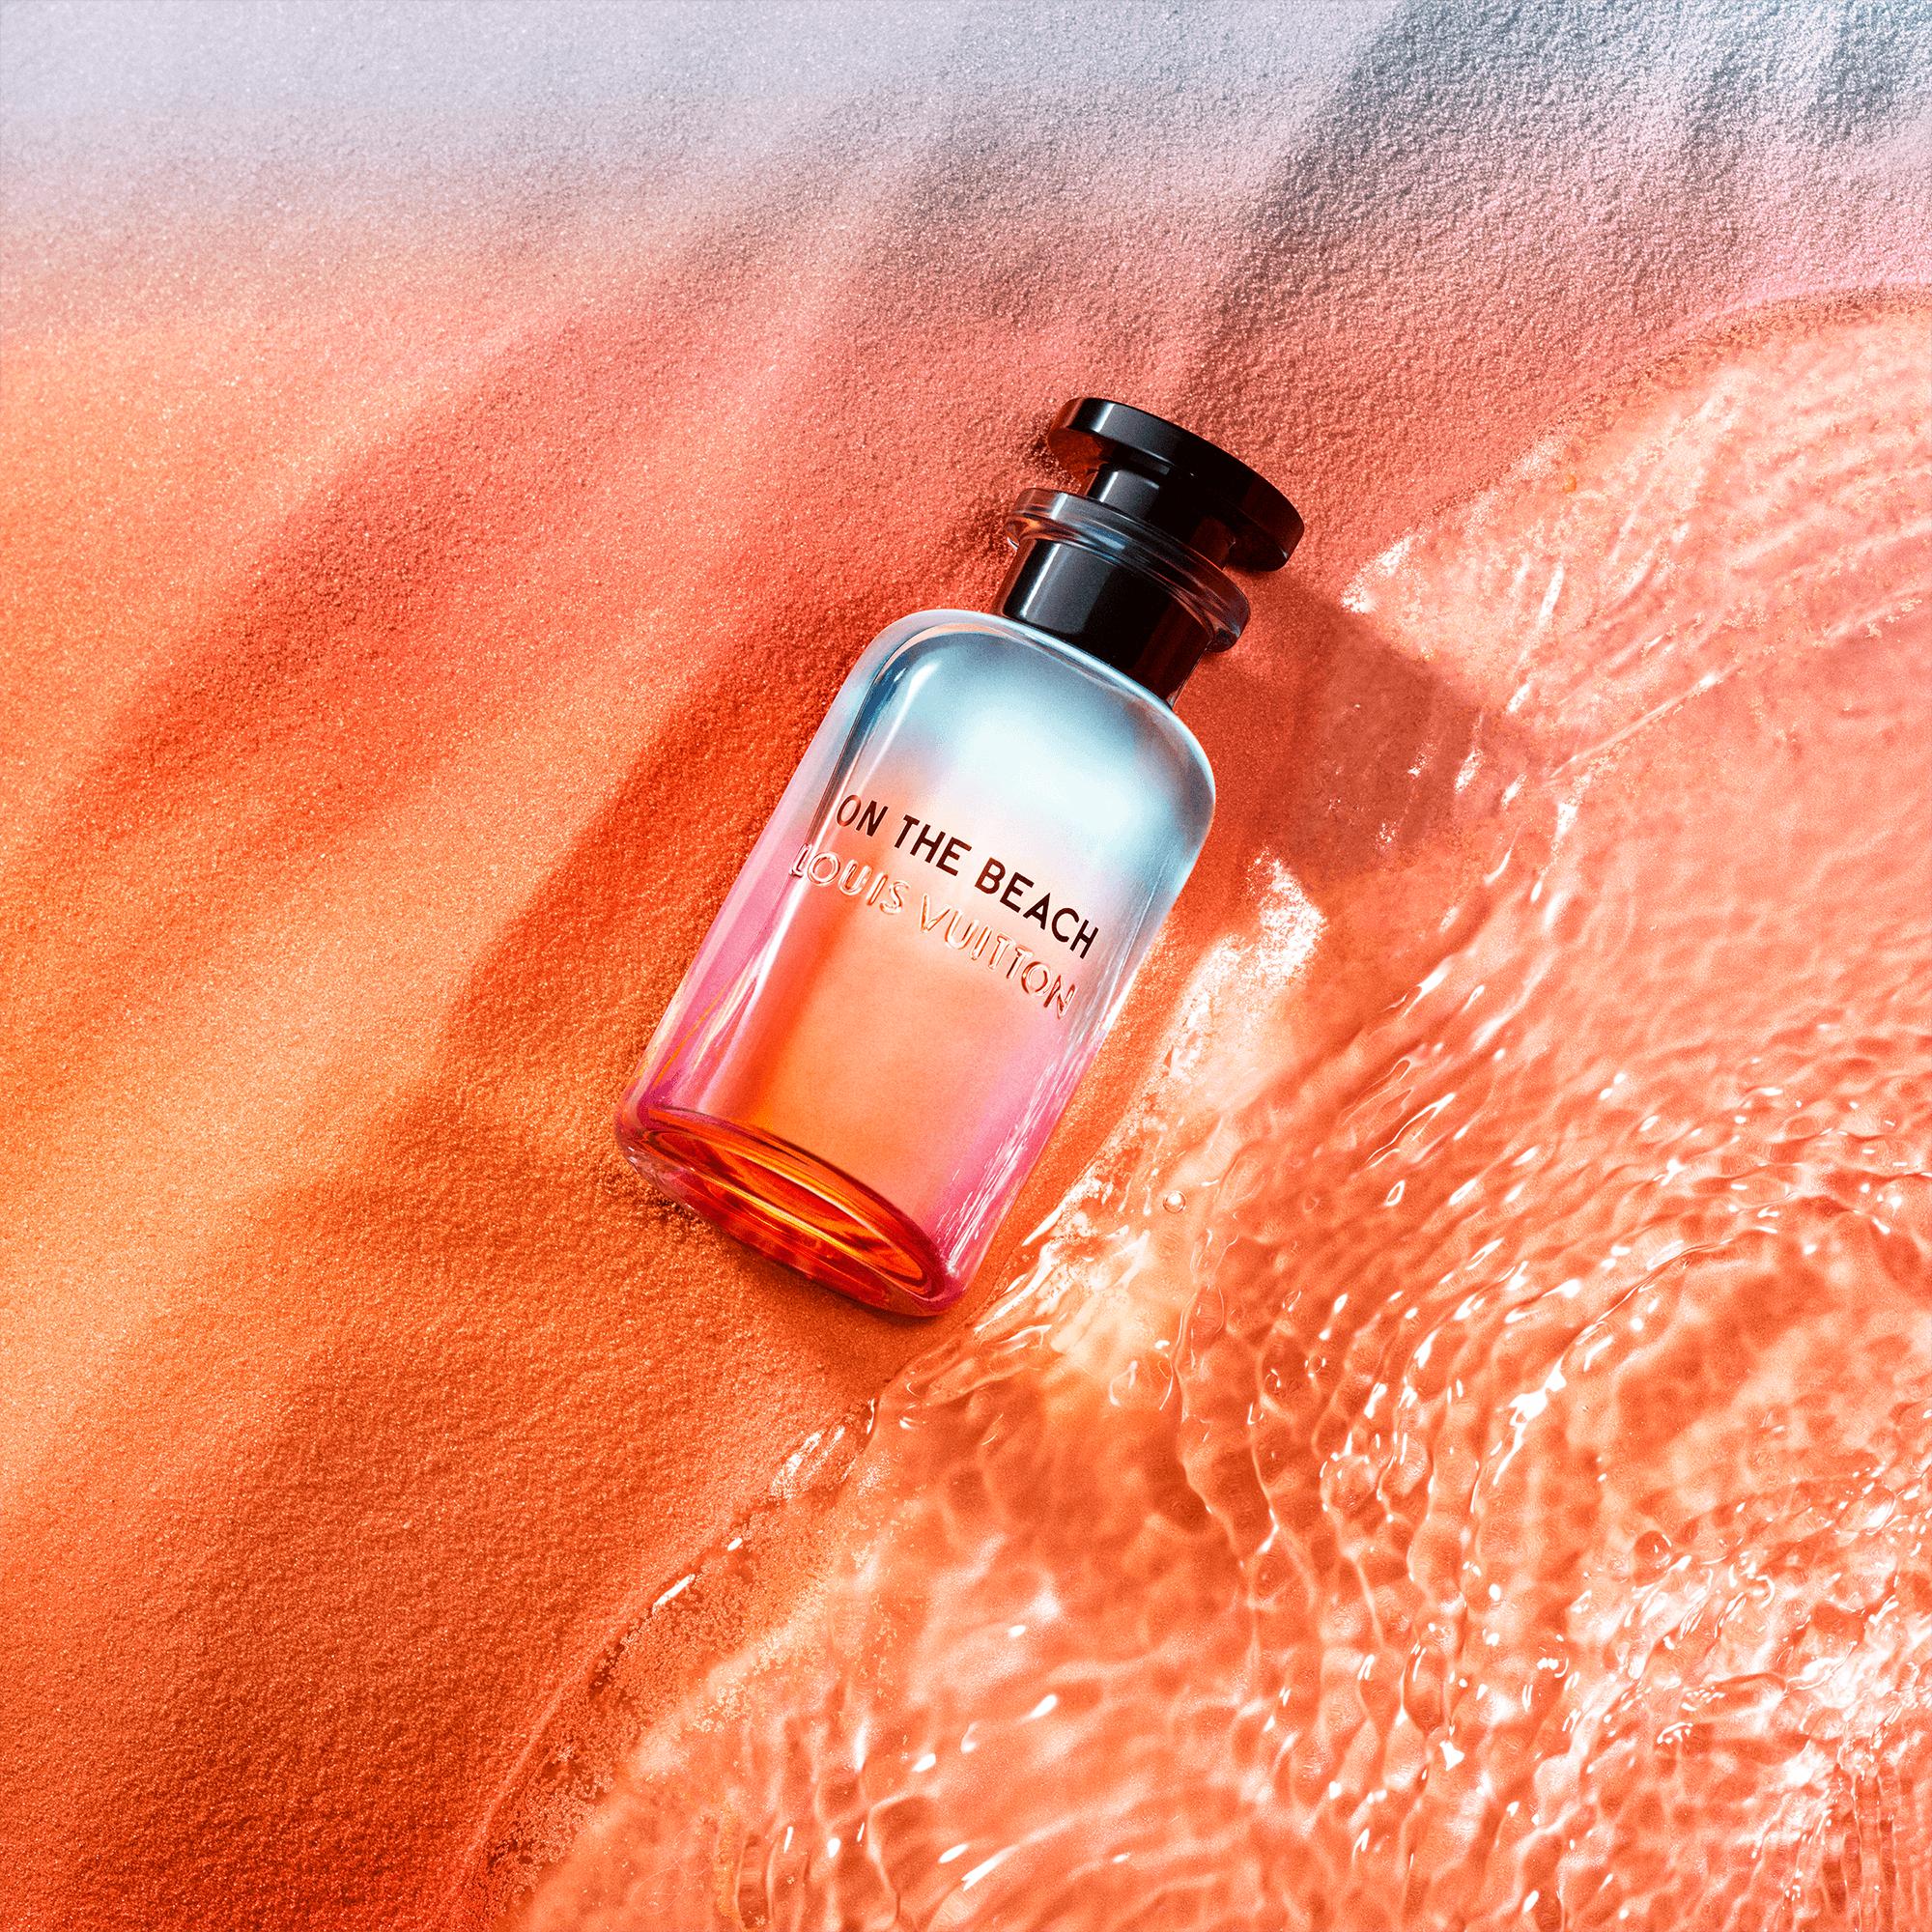 Louis Vuitton On The Beach EDP 100ml - Nước hoa chính hãng 100% nhập khẩu Pháp, Mỹ…Giá tốt tại Perfume168